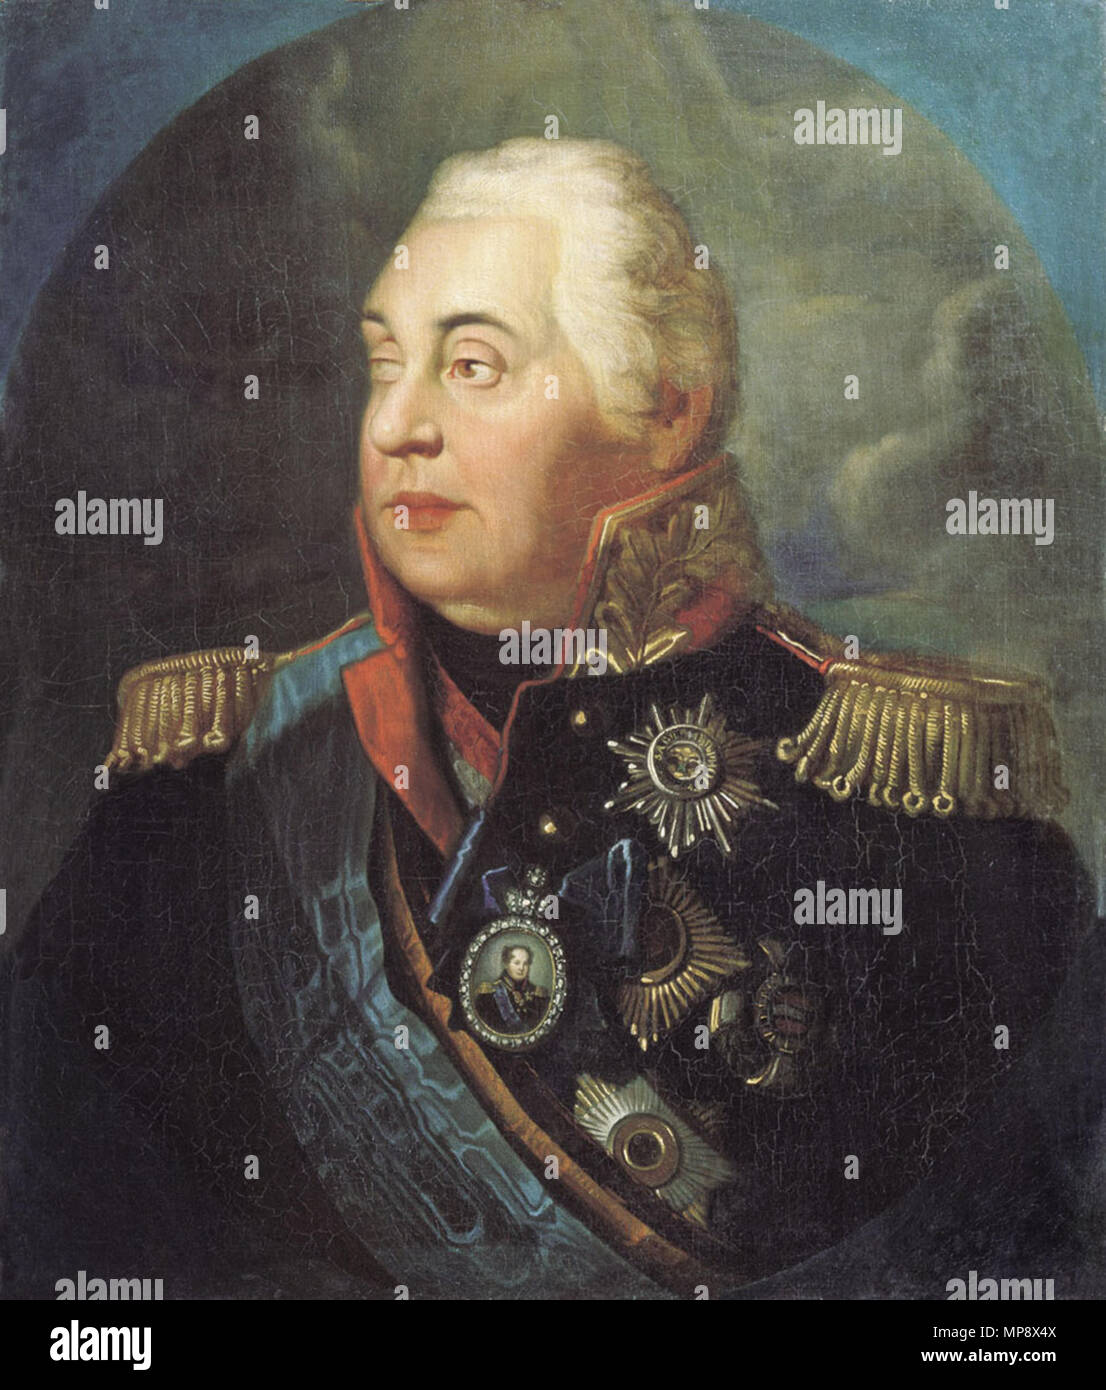 Назовите российского военачальника изображенного. Портрет Кутузова 1774 года. Чтобы спасти Россию надо спалить Москву.